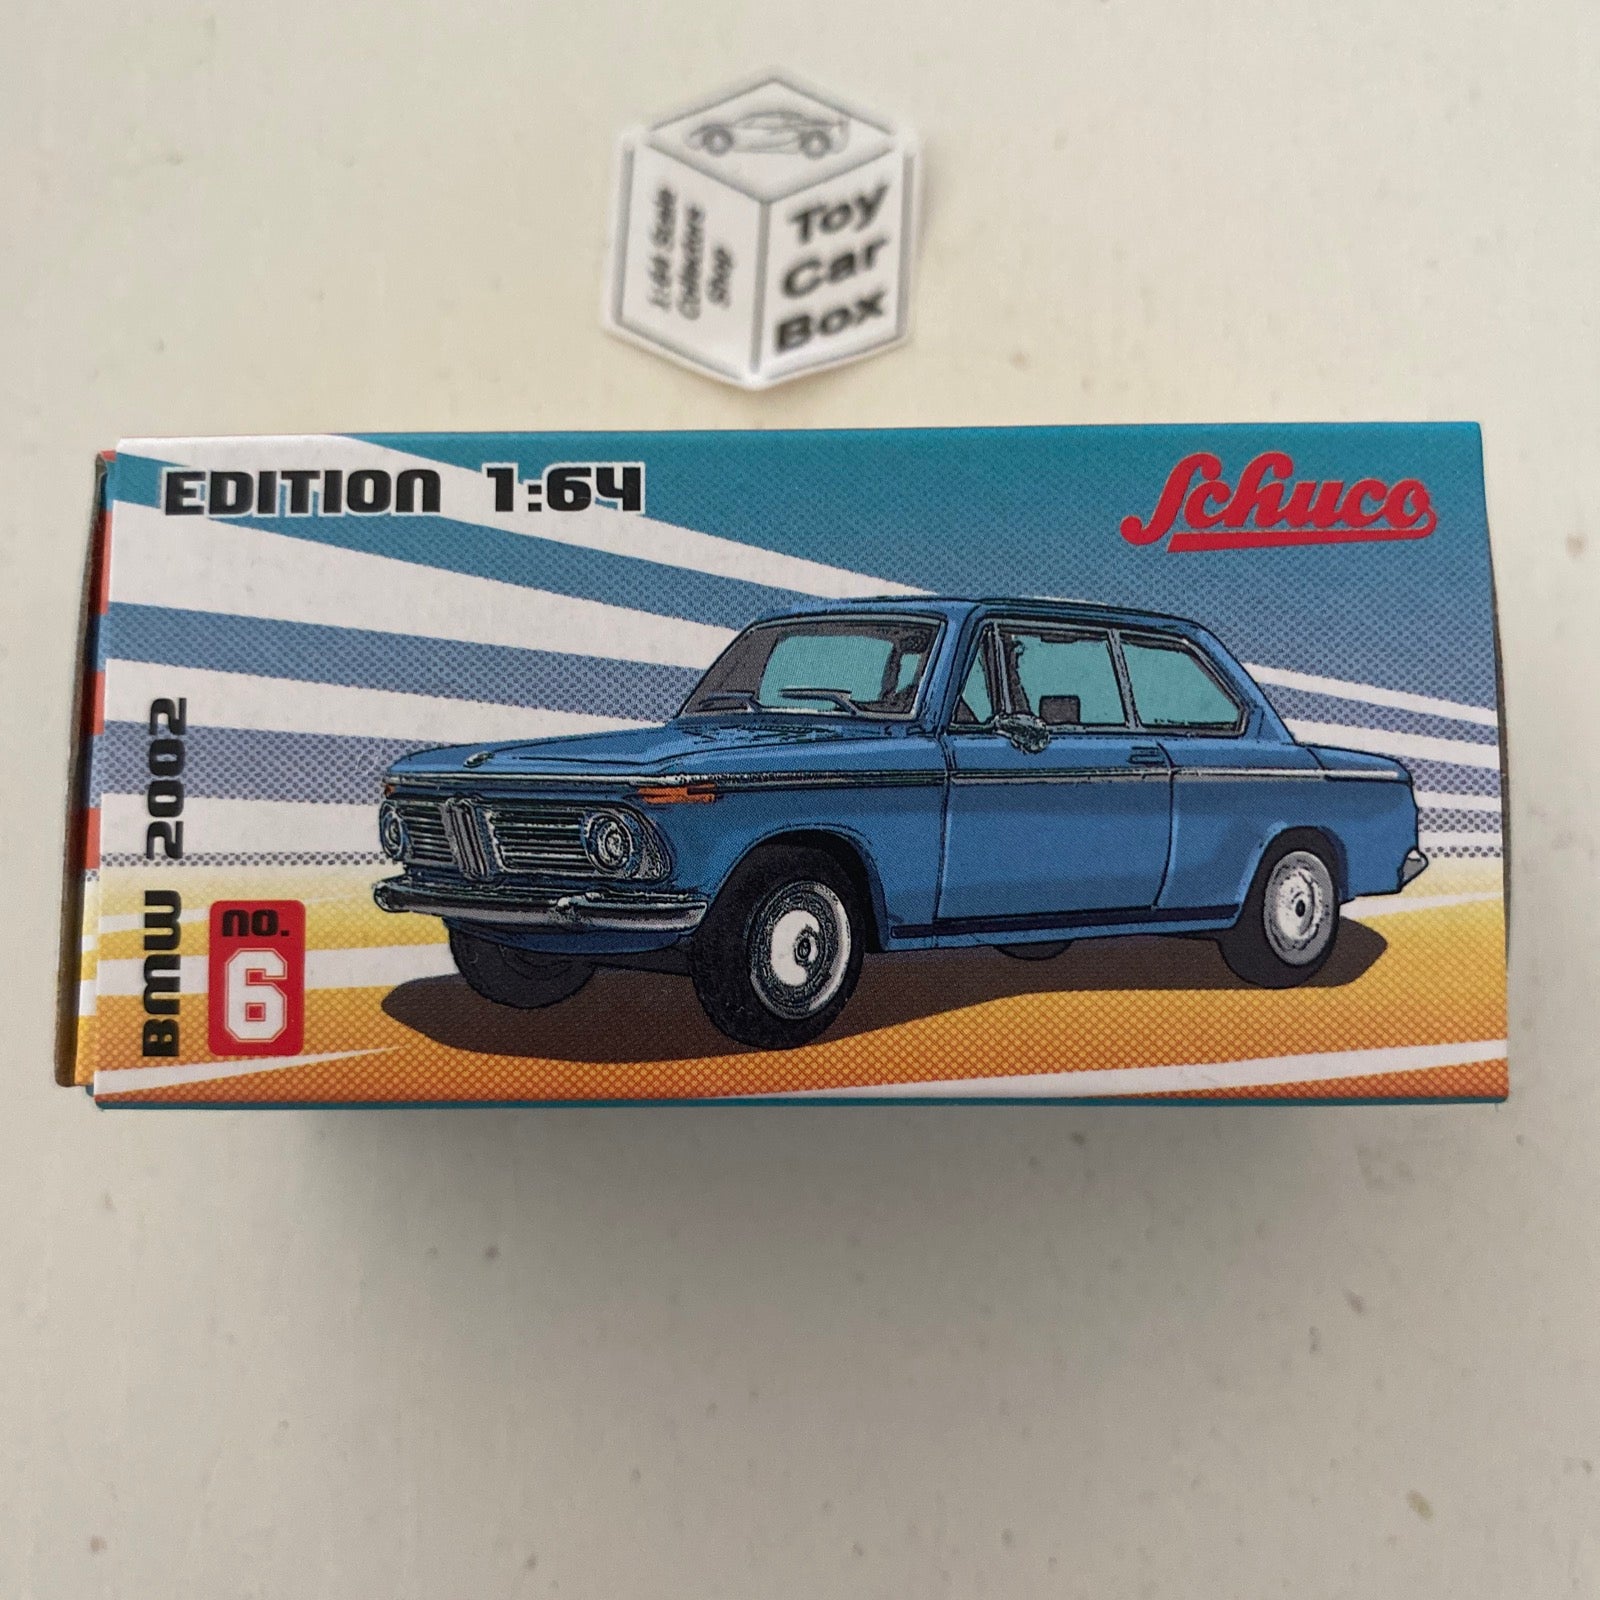 Schuco – Toy Car Box